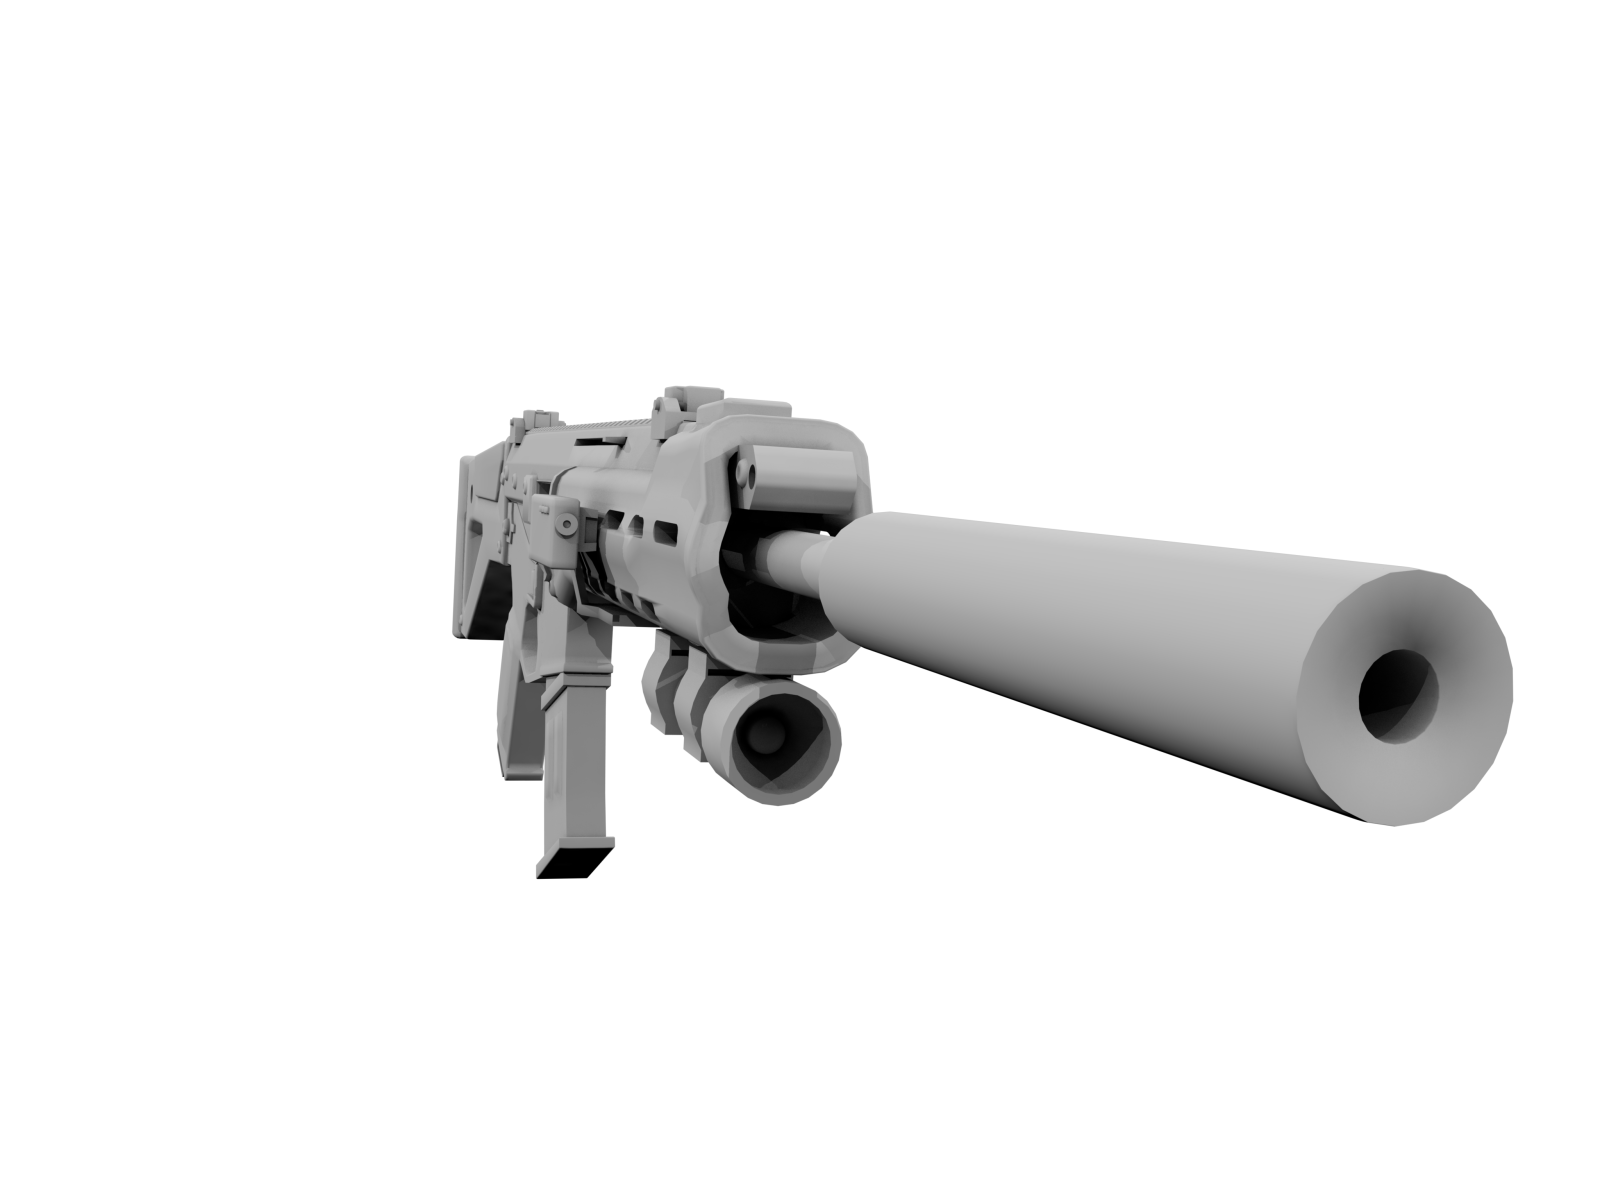 Снайперская винтовка, 3Д модель